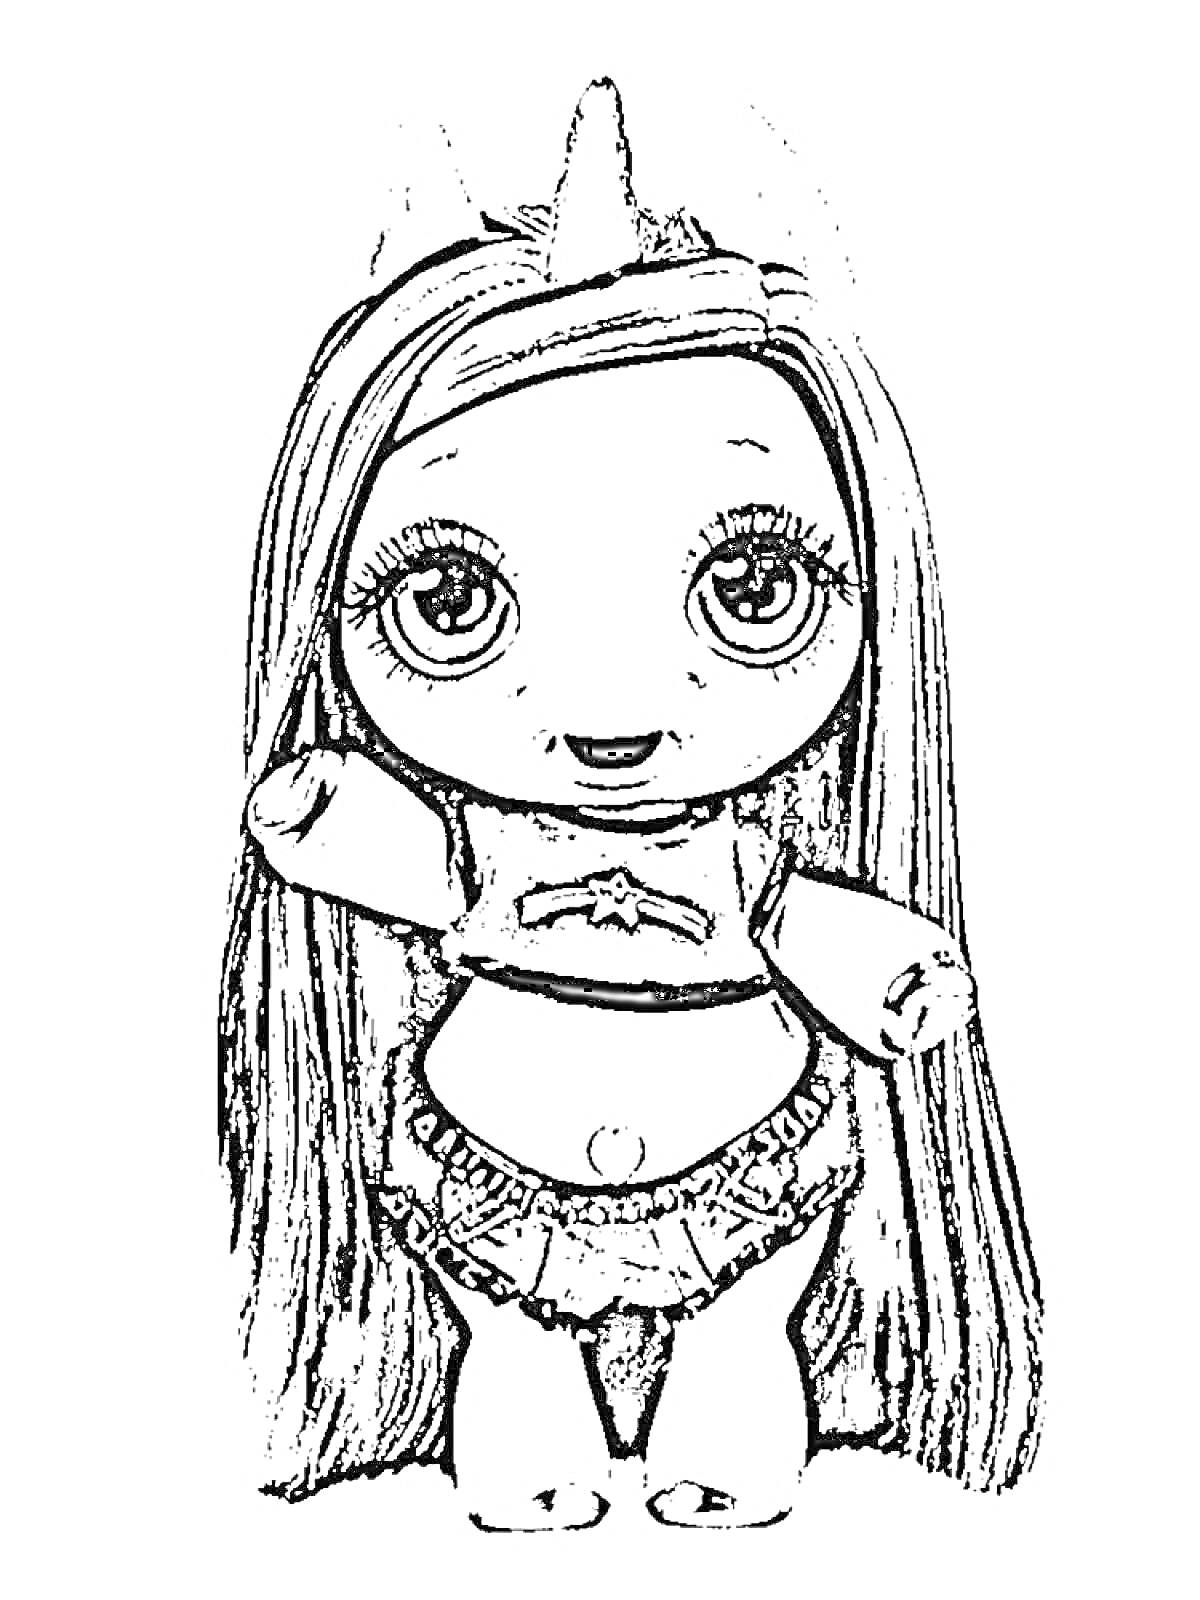 Кукла Пупси Слайм в юбке и кофточке с длинными волосами и рогом единорога